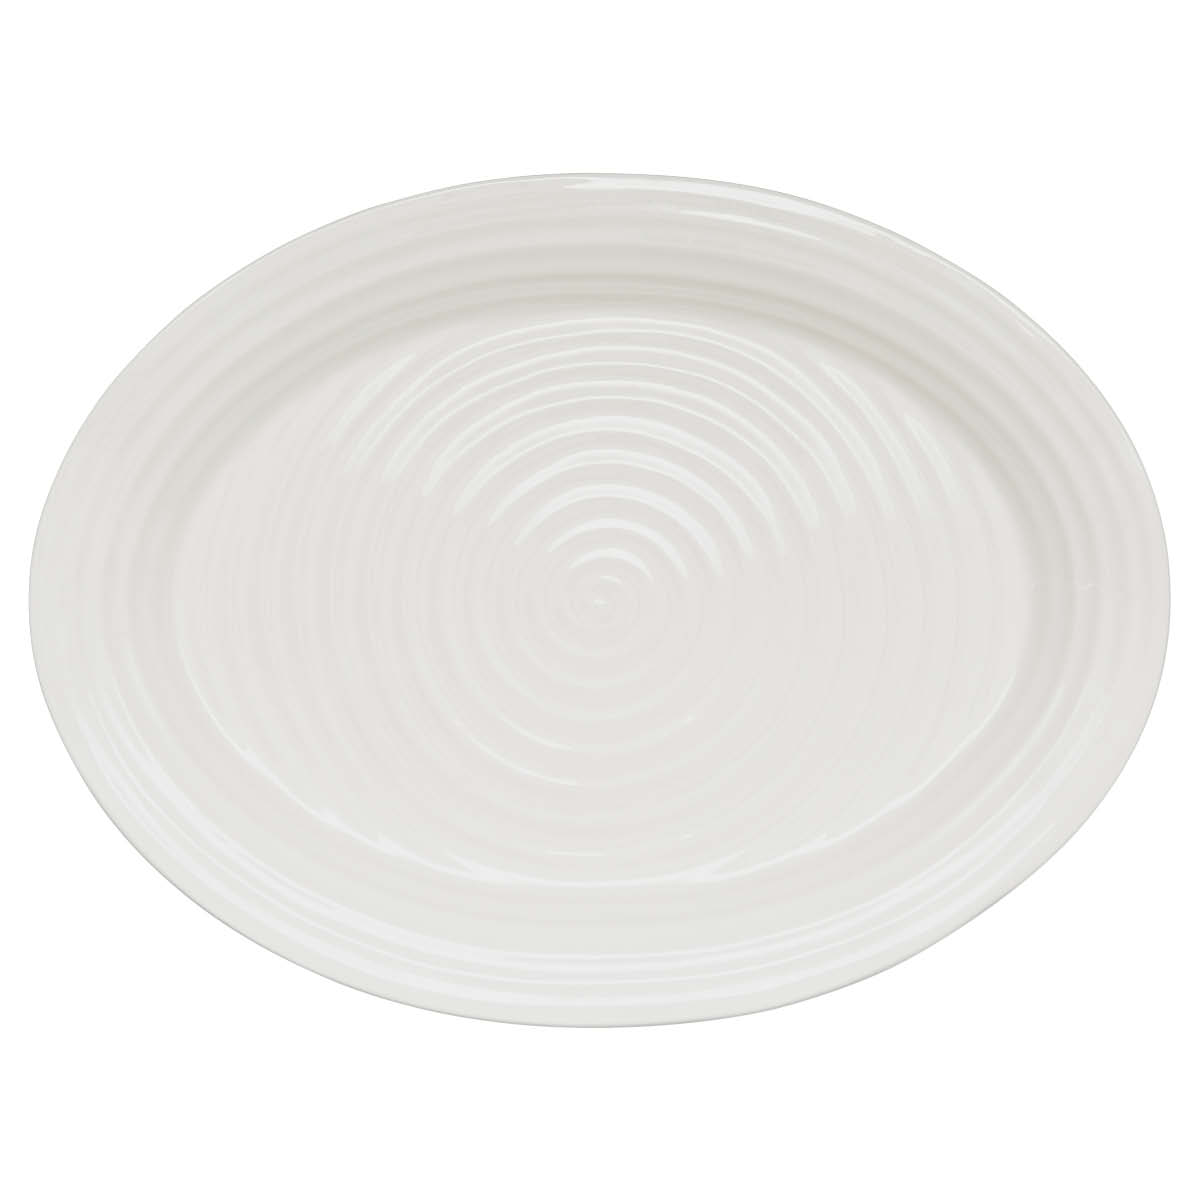 포트메리온 '소피 콘란' 오발 터키 접시 Portmeirion Sophie Conran White Oval Turkey Platter